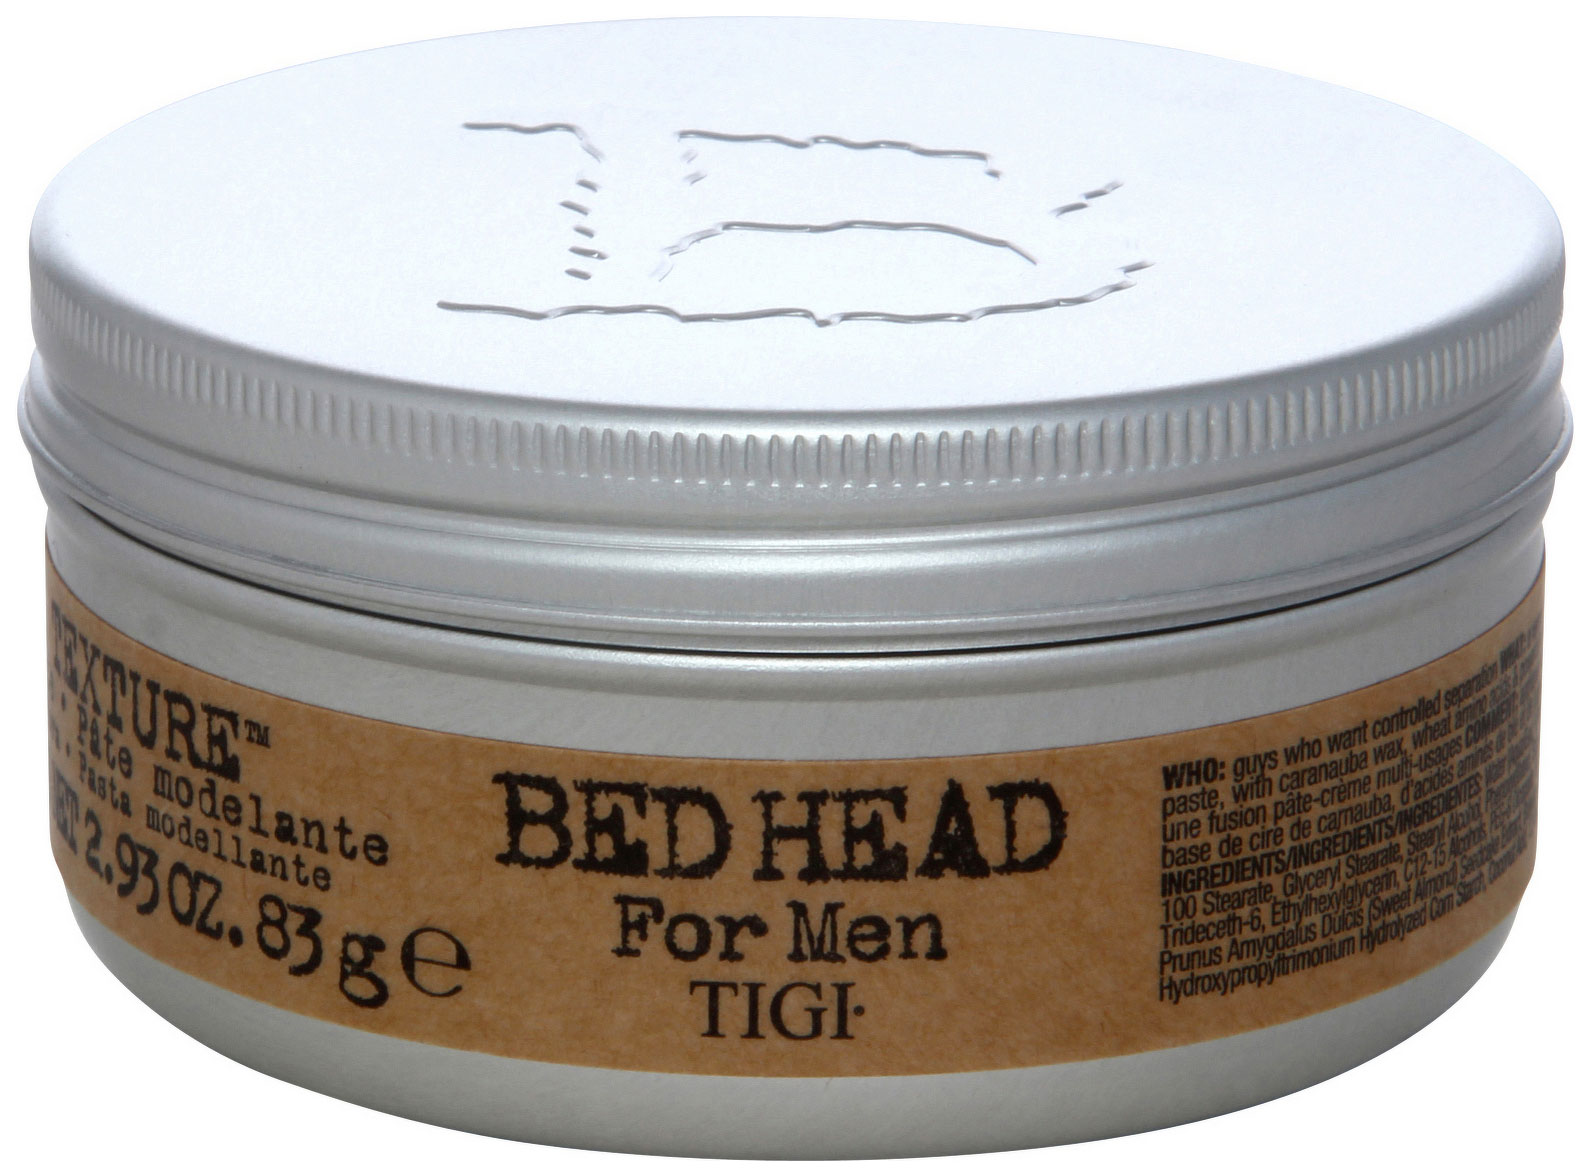 Средство для укладки волос Tigi Bed Head for Men Pure Texture Molding Paste 83 г american crew паста со средней фиксацией и низким уровнем блеска для укладки волос для мужчин defining paste 85 г